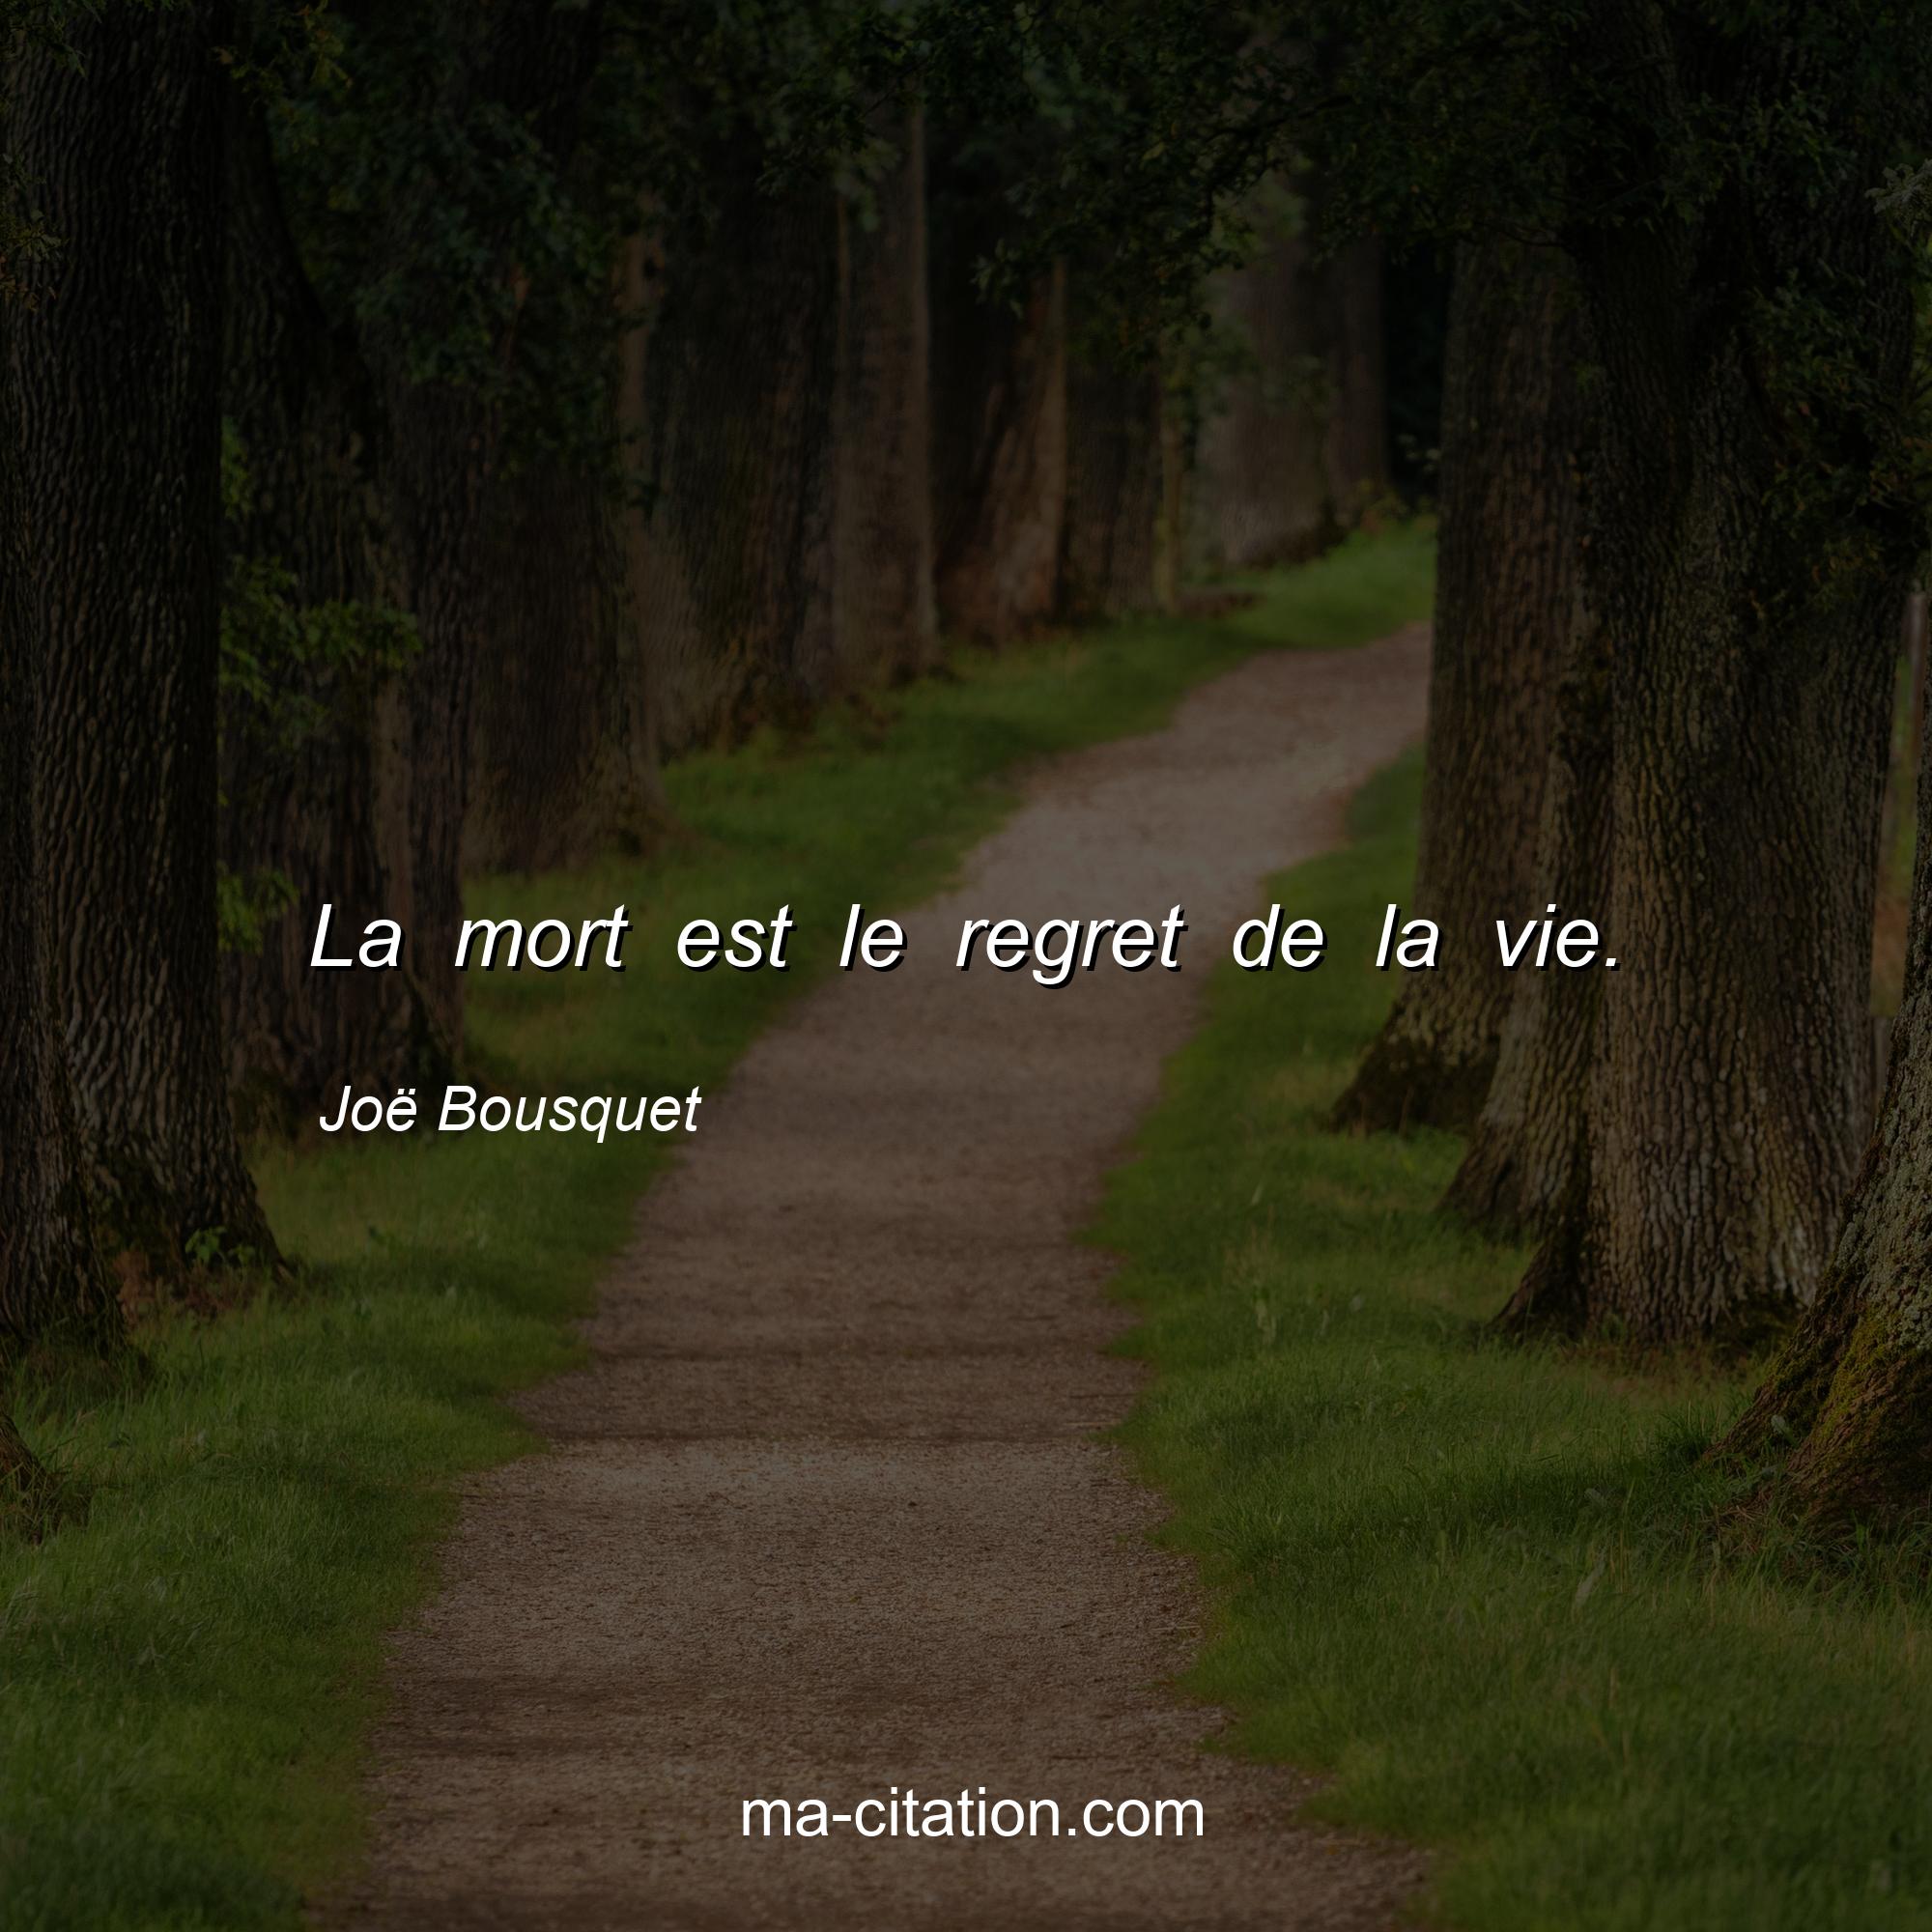 Joë Bousquet : La mort est le regret de la vie.